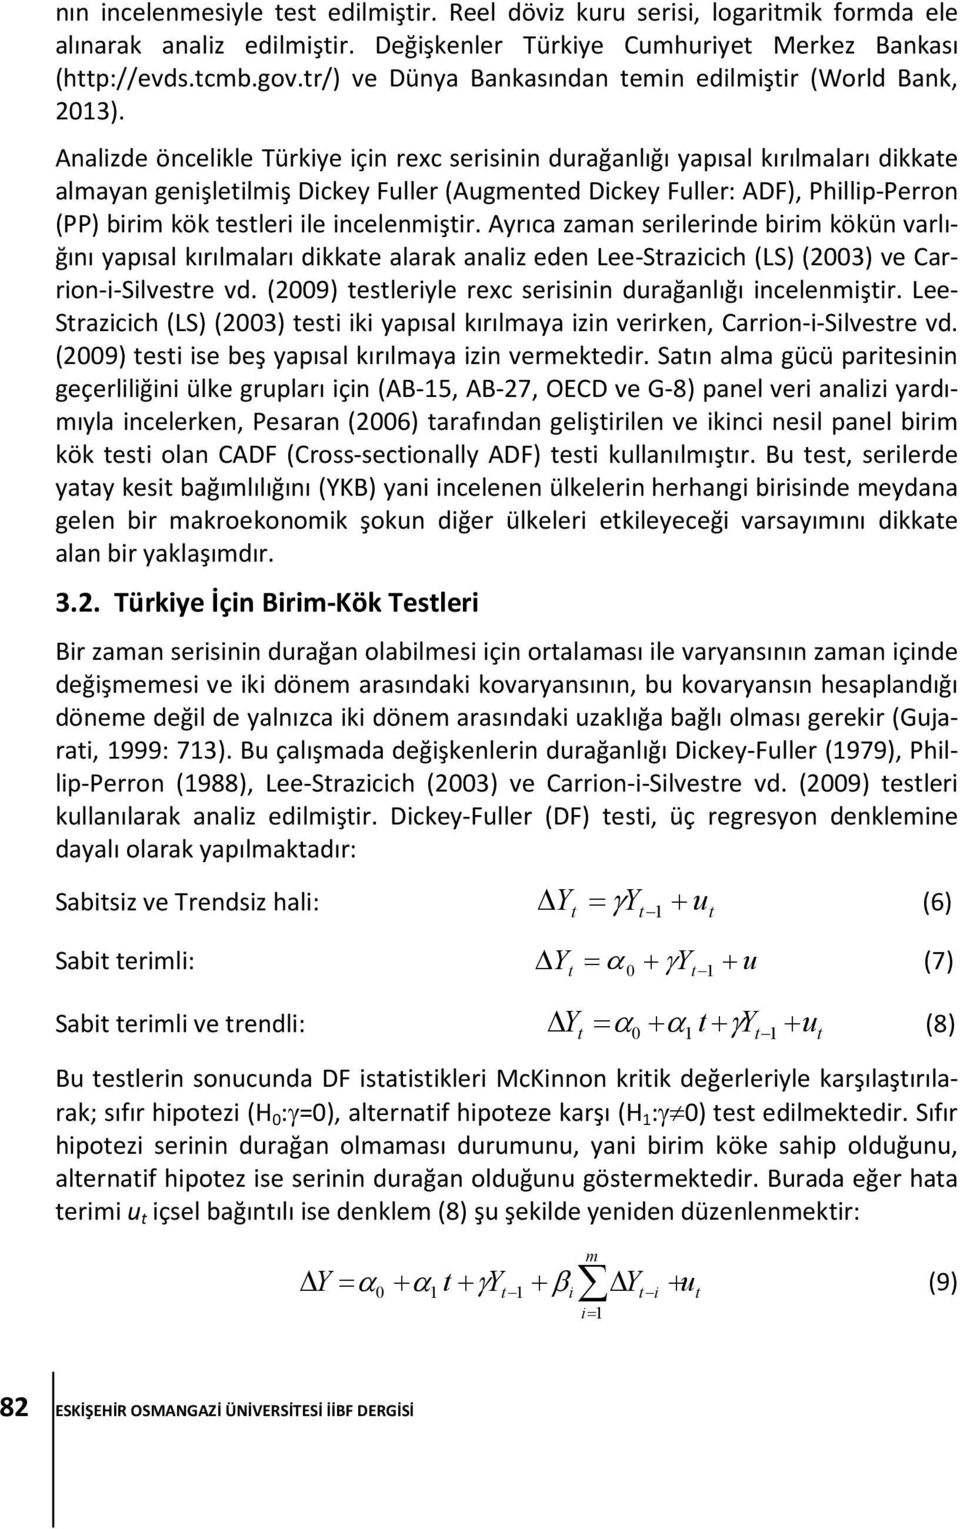 Analizde öncelikle Türkiye için rexc serisinin durağanlığı yapısal kırılmaları dikkate almayan genişletilmiş Dickey Fuller (Augmented Dickey Fuller: ADF), Phillip-Perron (PP) birim kök testleri ile